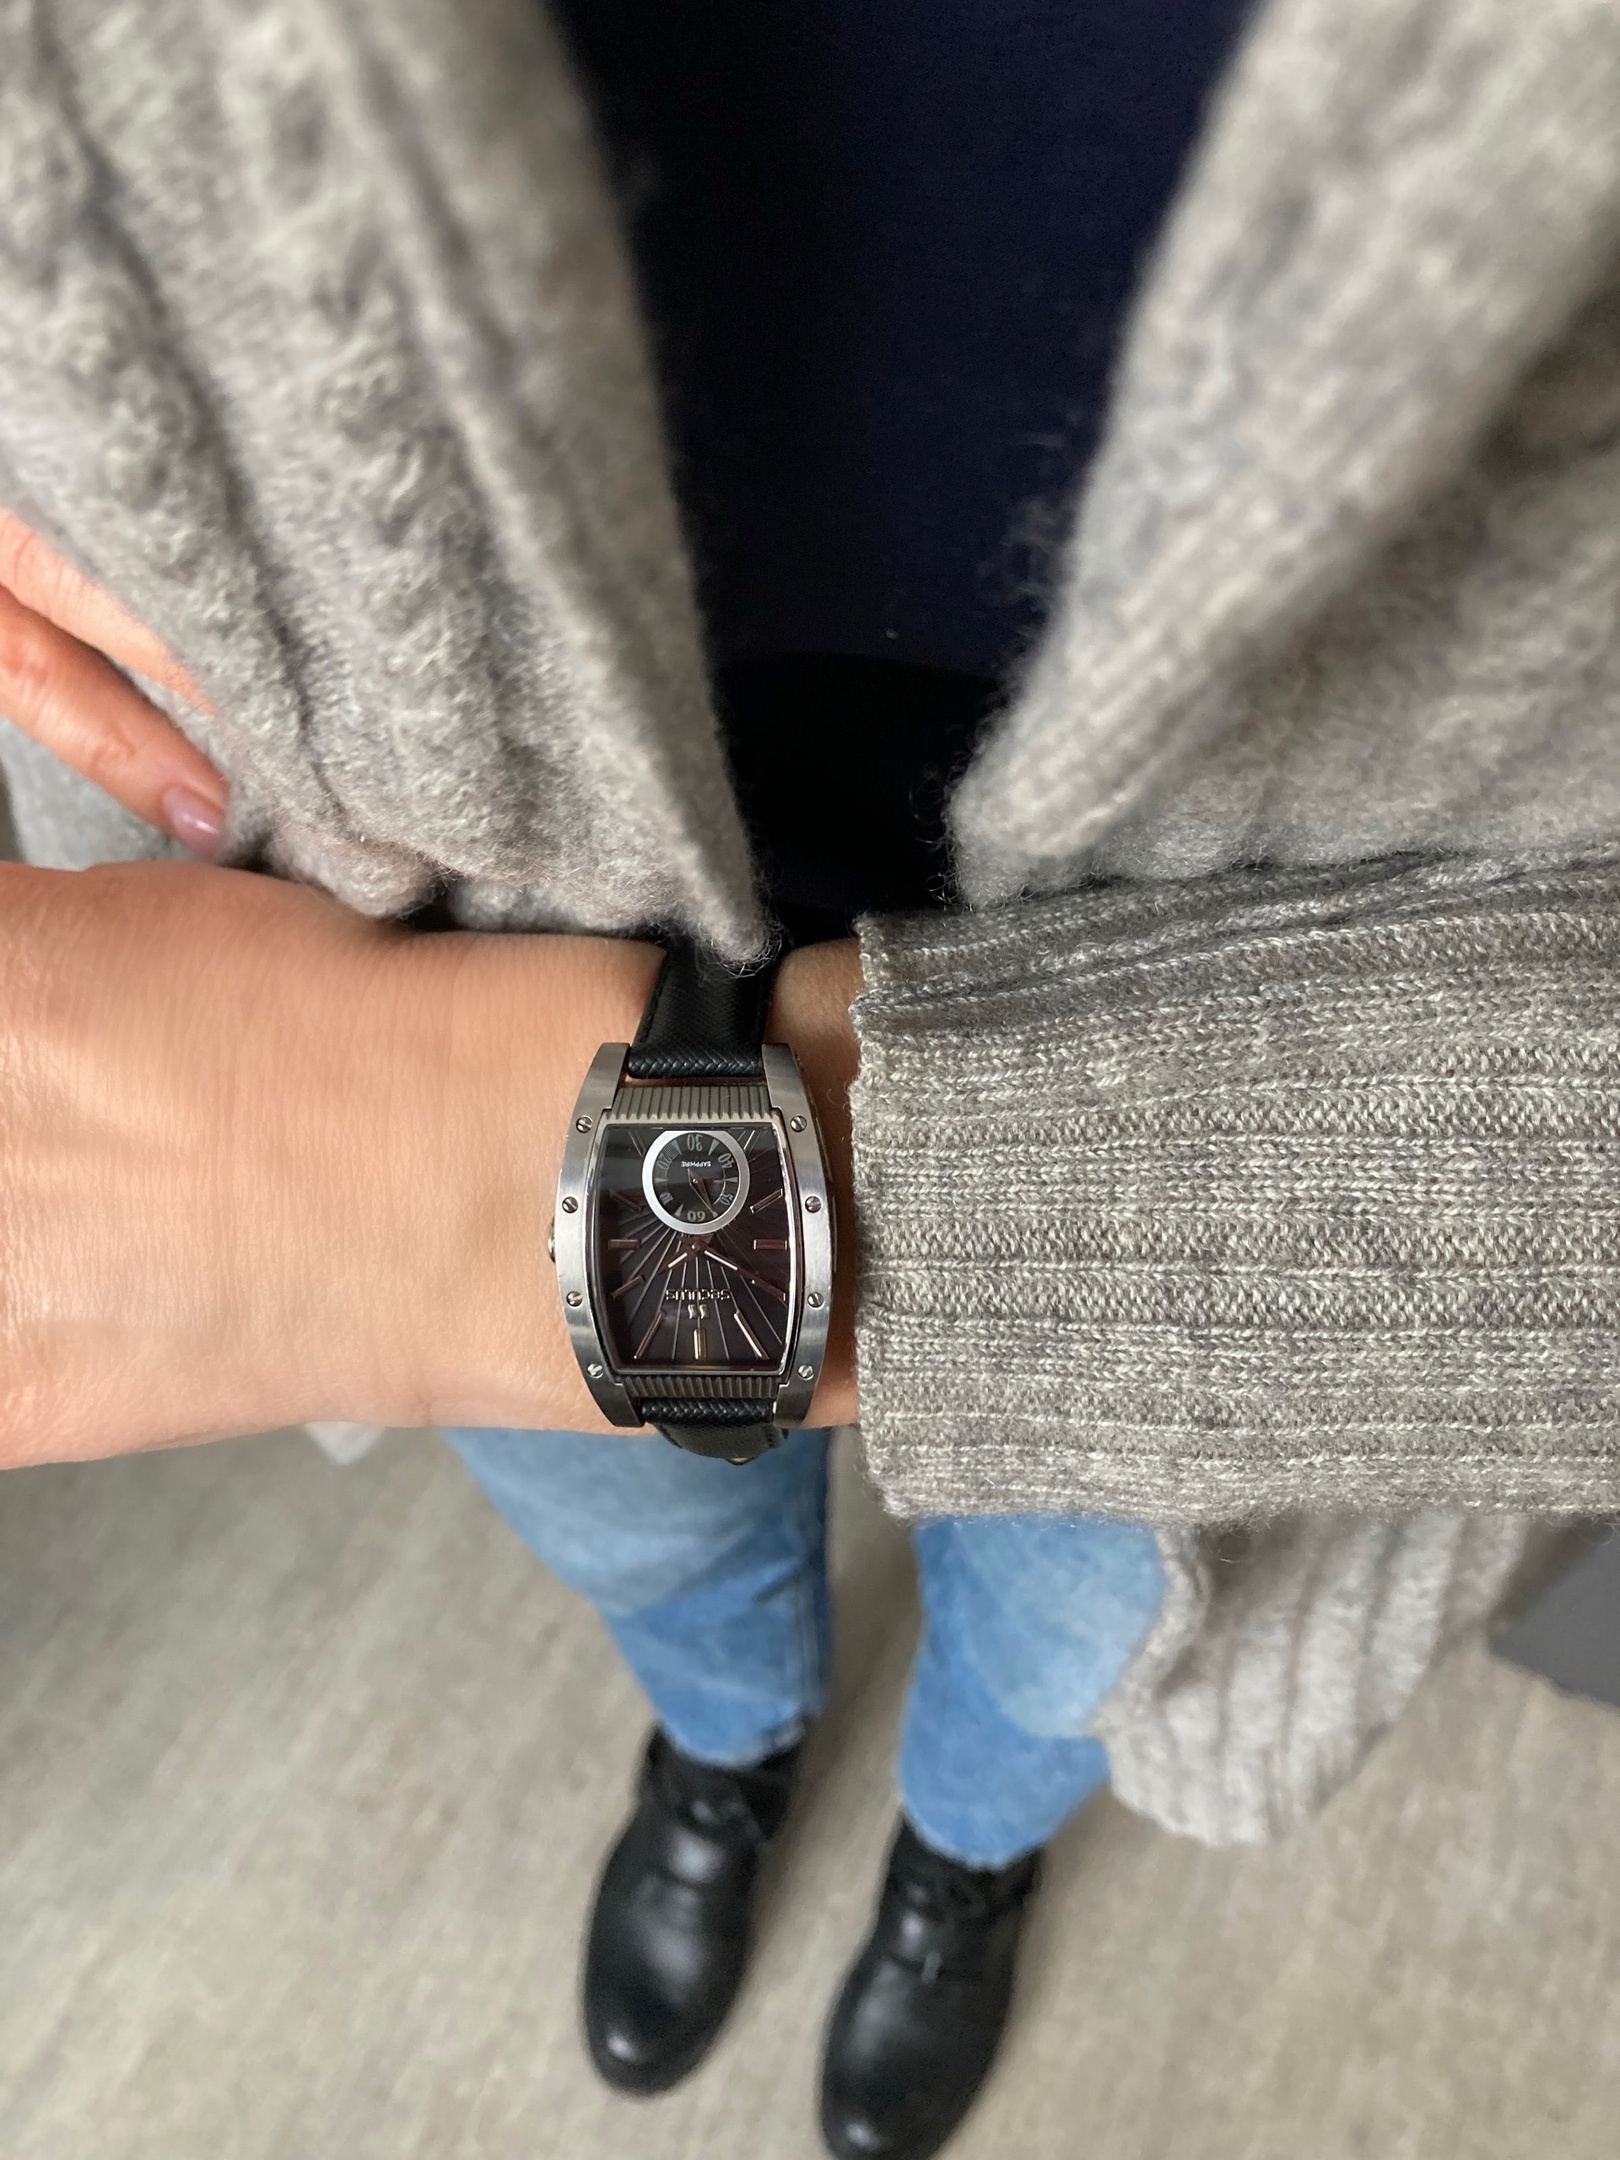 Женские наручные часы с браслетом — купить в sauna-chelyabinsk.ru, фото и цены в каталоге интернет-магазина